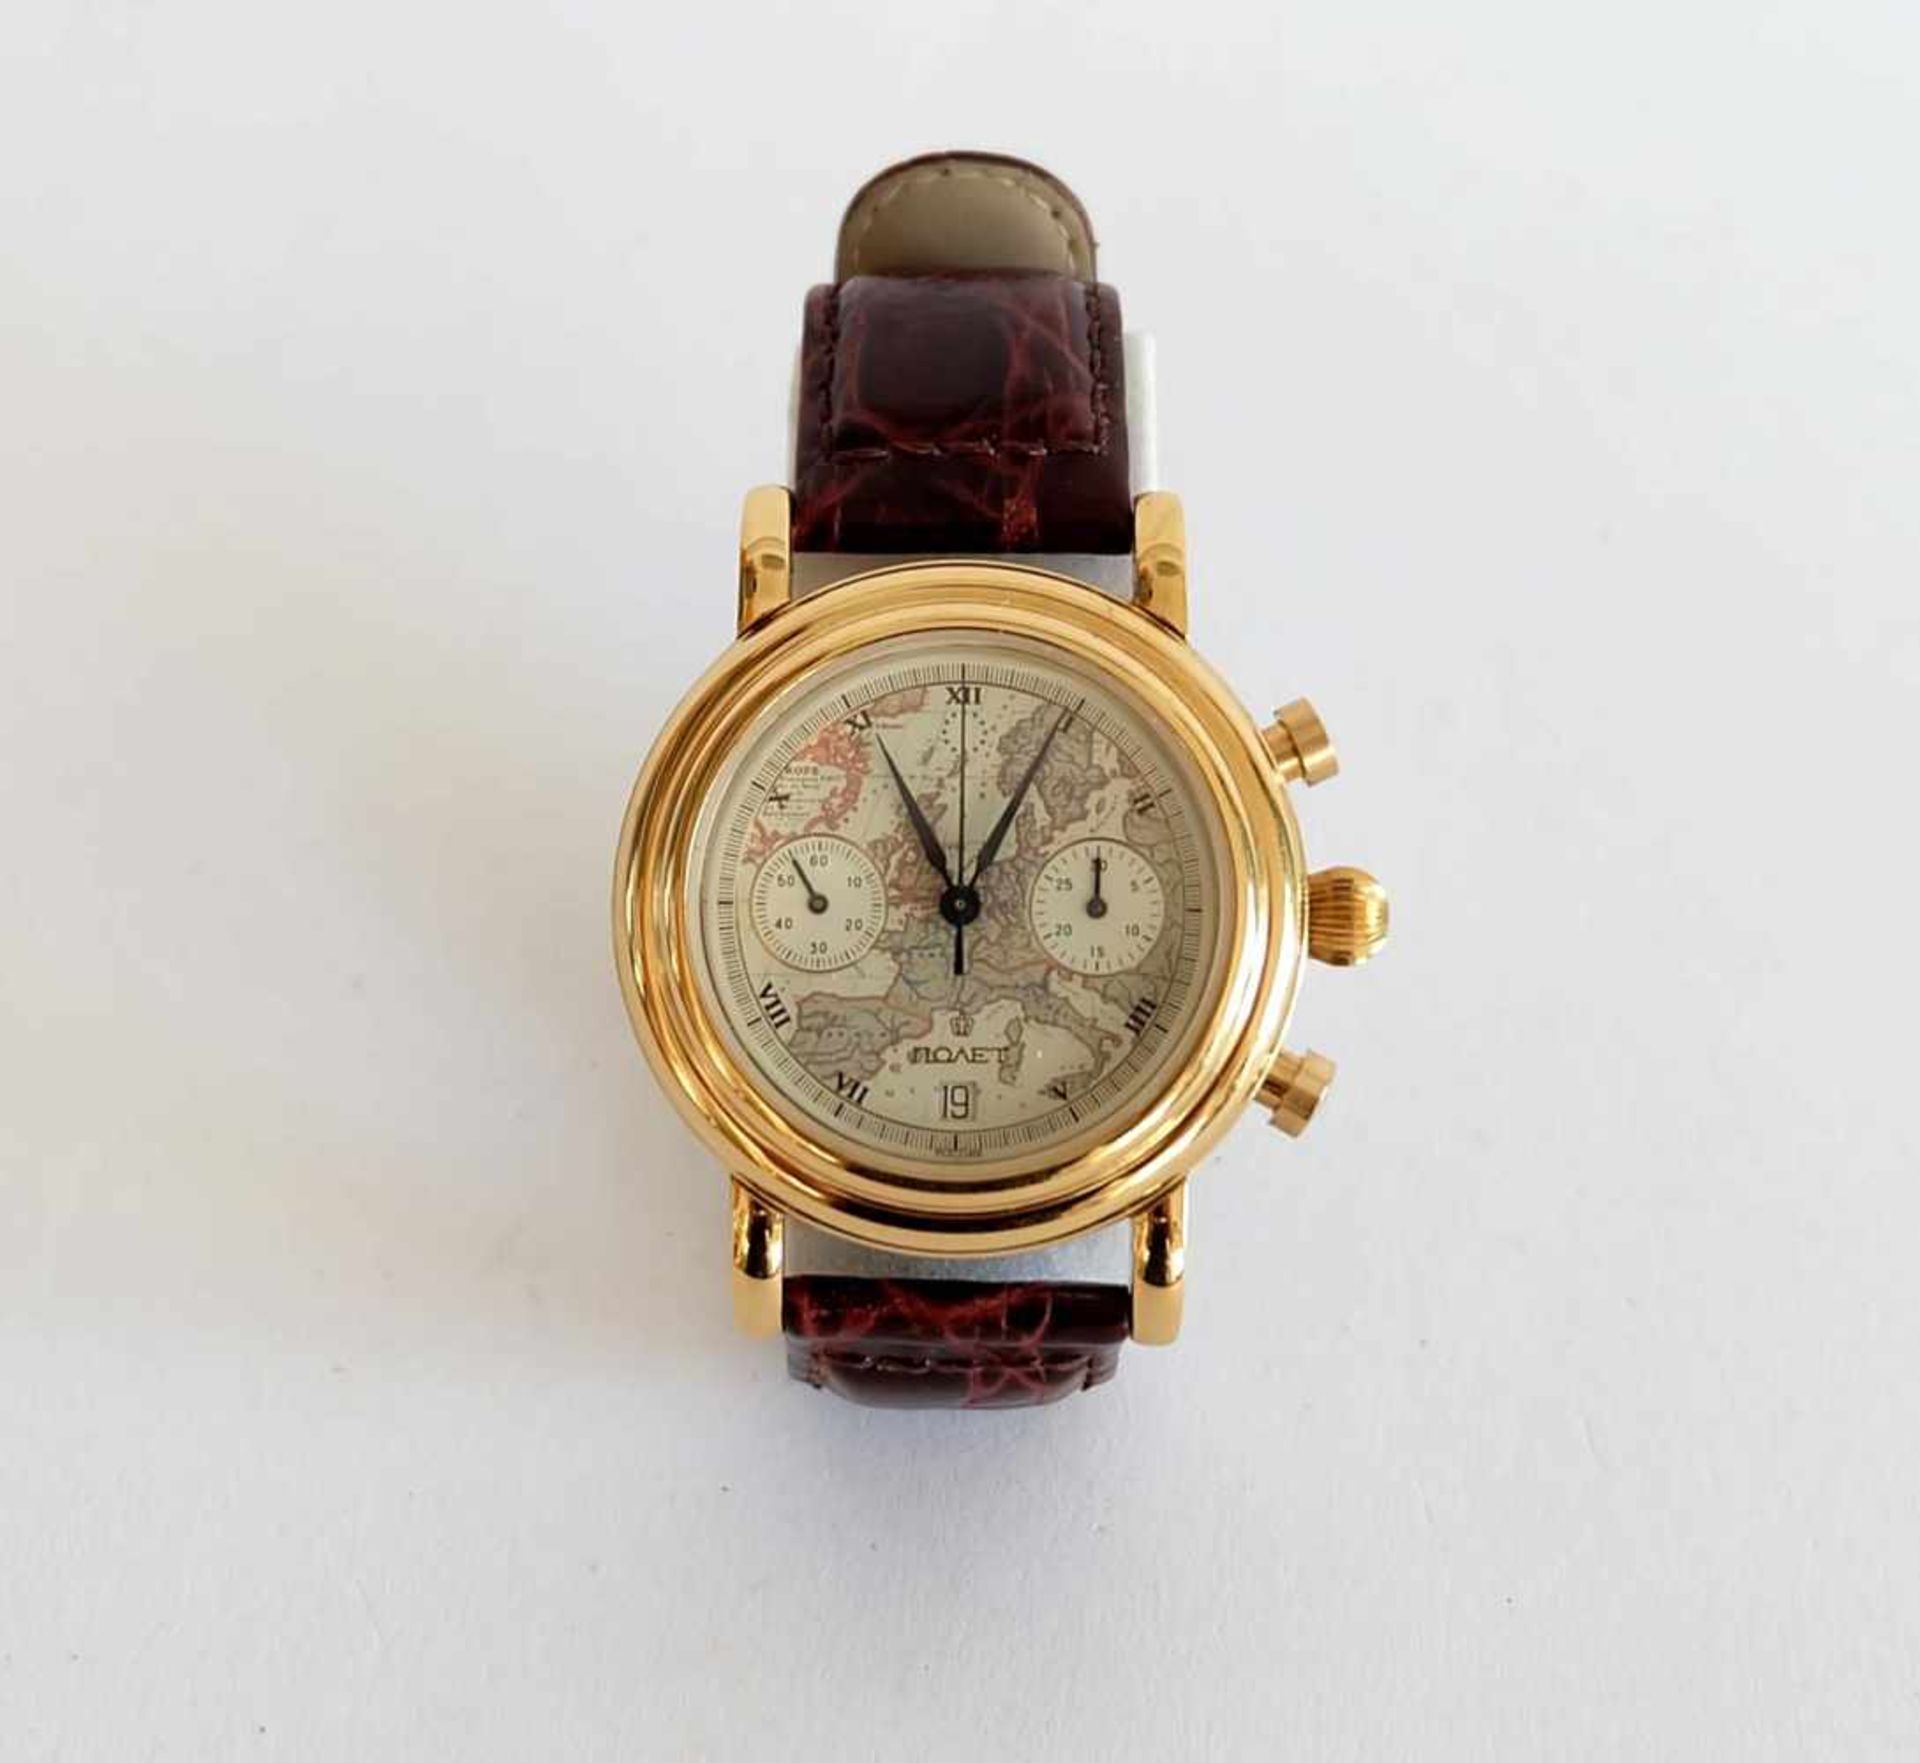 HAU, Chronograph, Erste Moskauer Uhrenfabrik, Marke Poljot, römische Indices, dezentrale Sekunde,